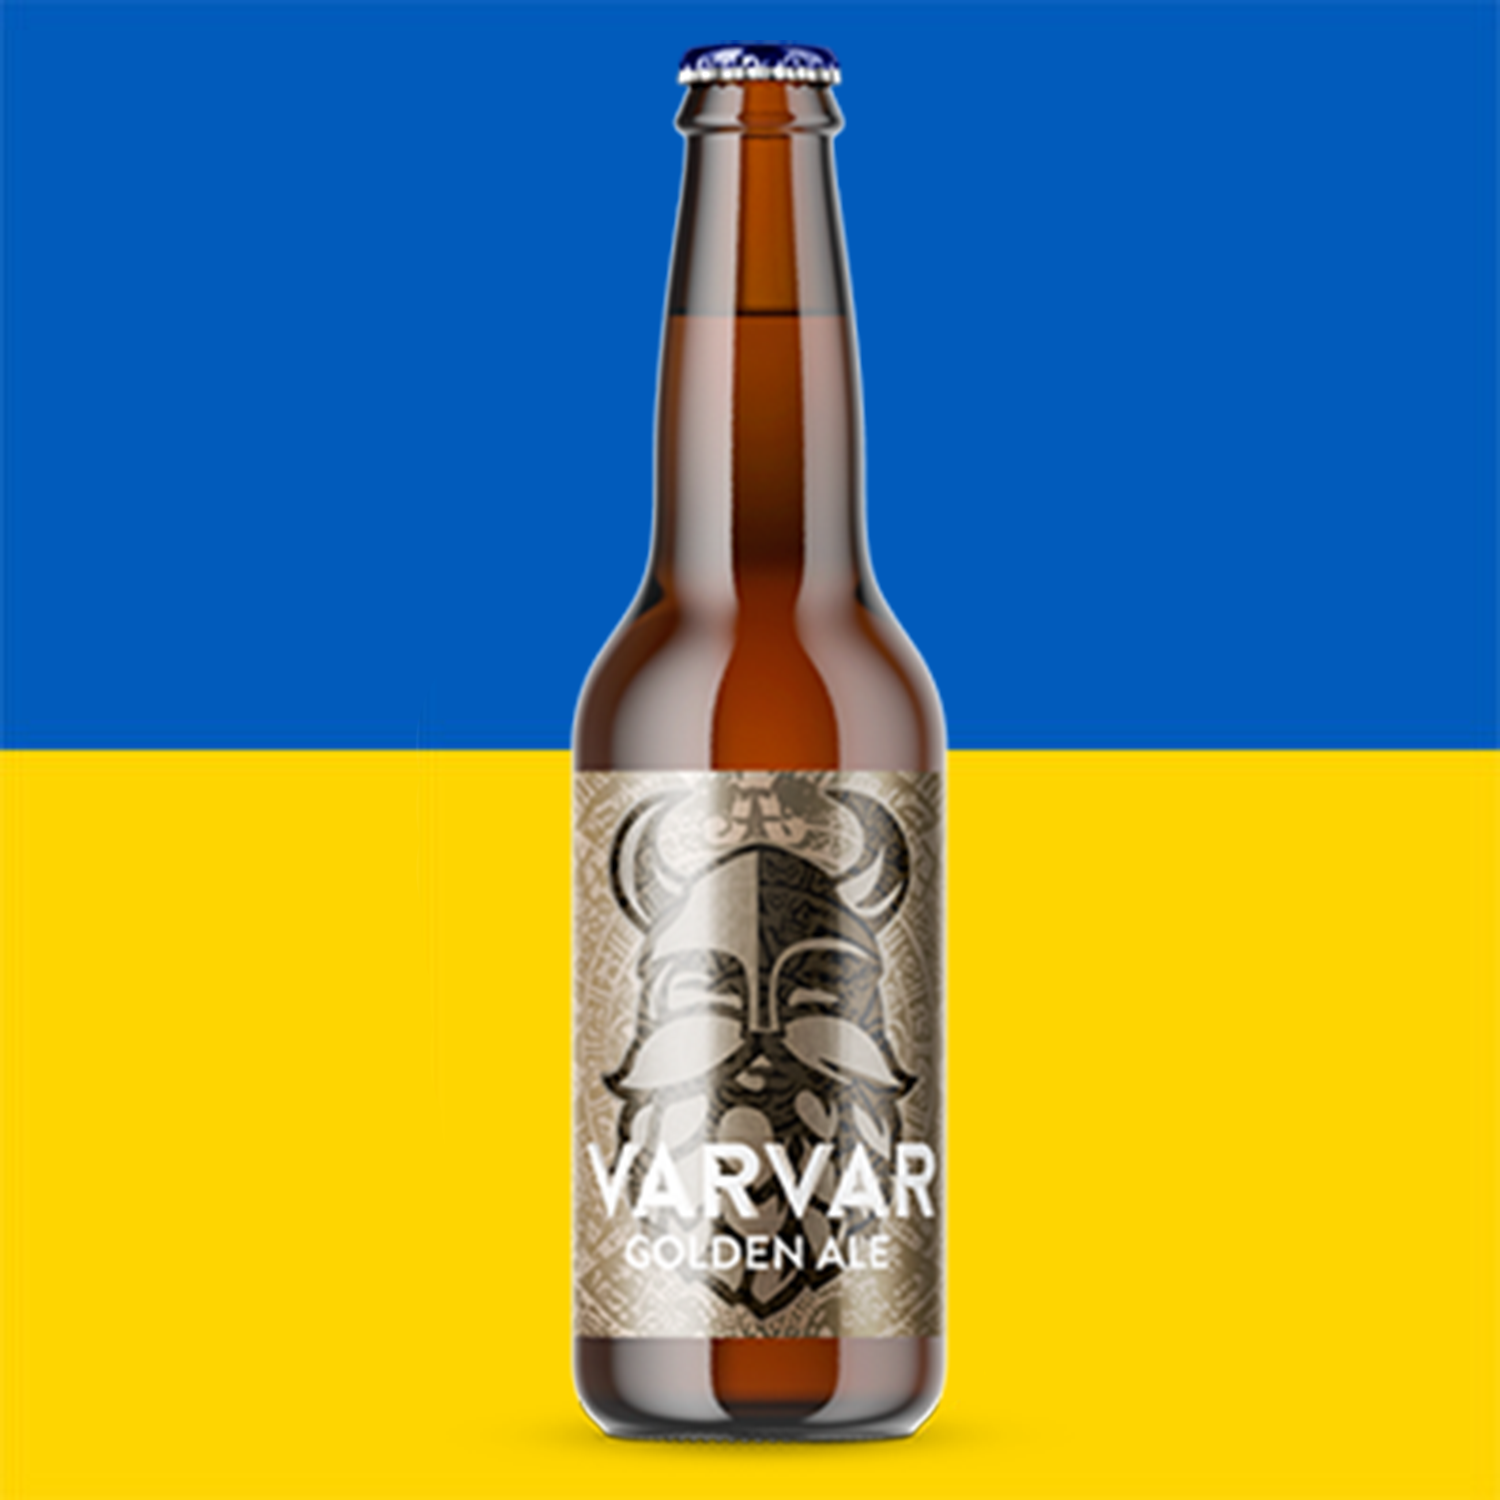 Varvar Golden Ale